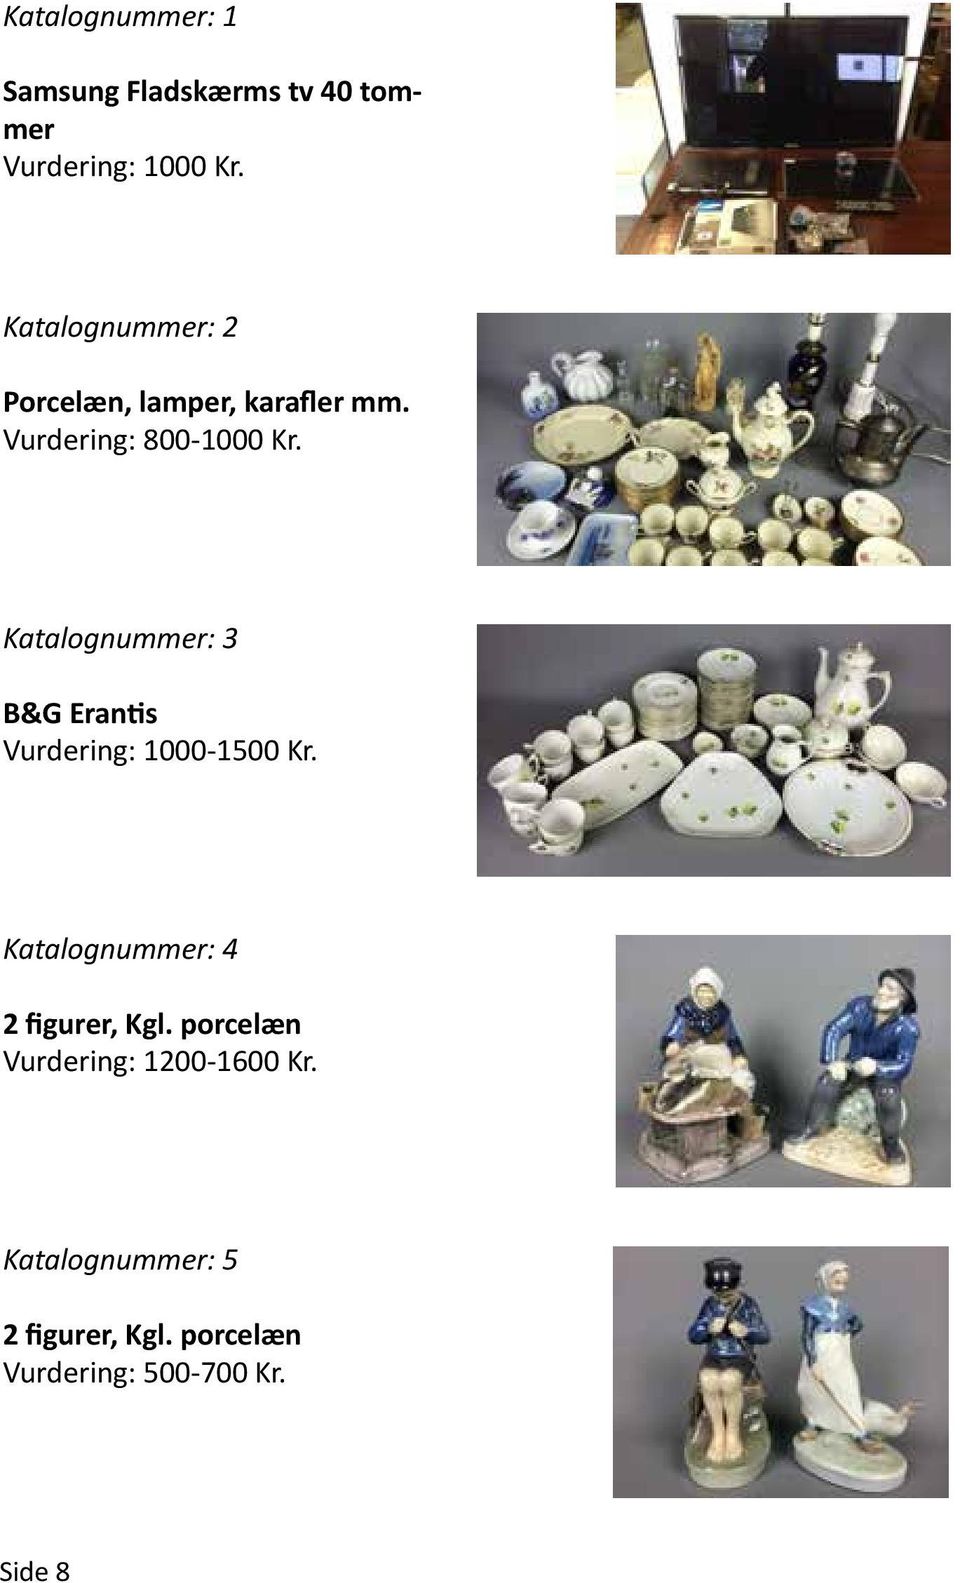 Katalognummer: 3 B&G Erantis Vurdering: 1000-1500 Kr.